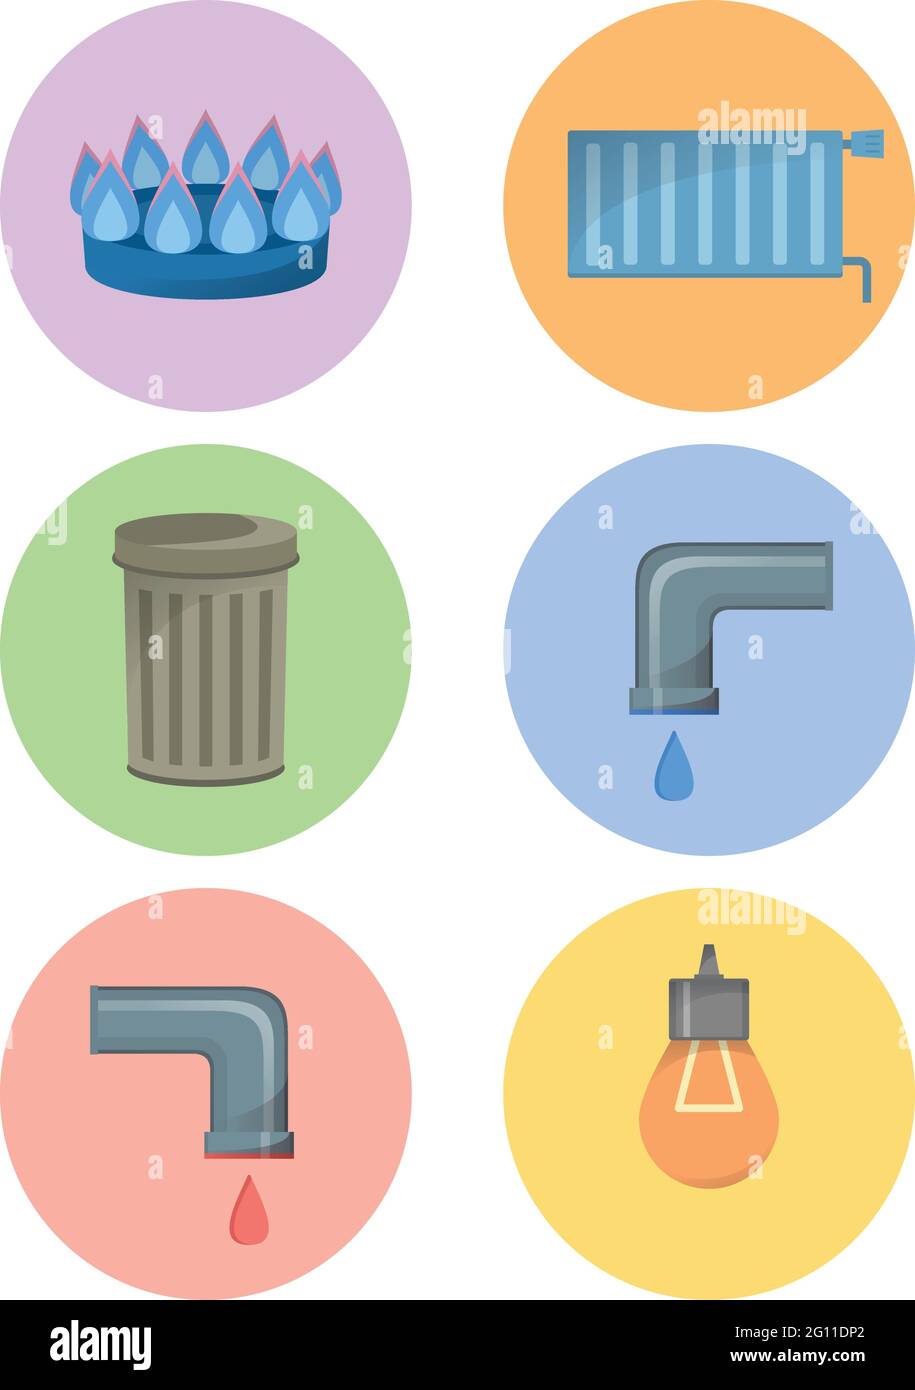 Diversi tipi di utenze, set di icone delle strutture, illustrazione vettoriale dei servizi municipali, acqua fredda e calda, rifiuti, gas, elettricità, riscaldamento Illustrazione Vettoriale